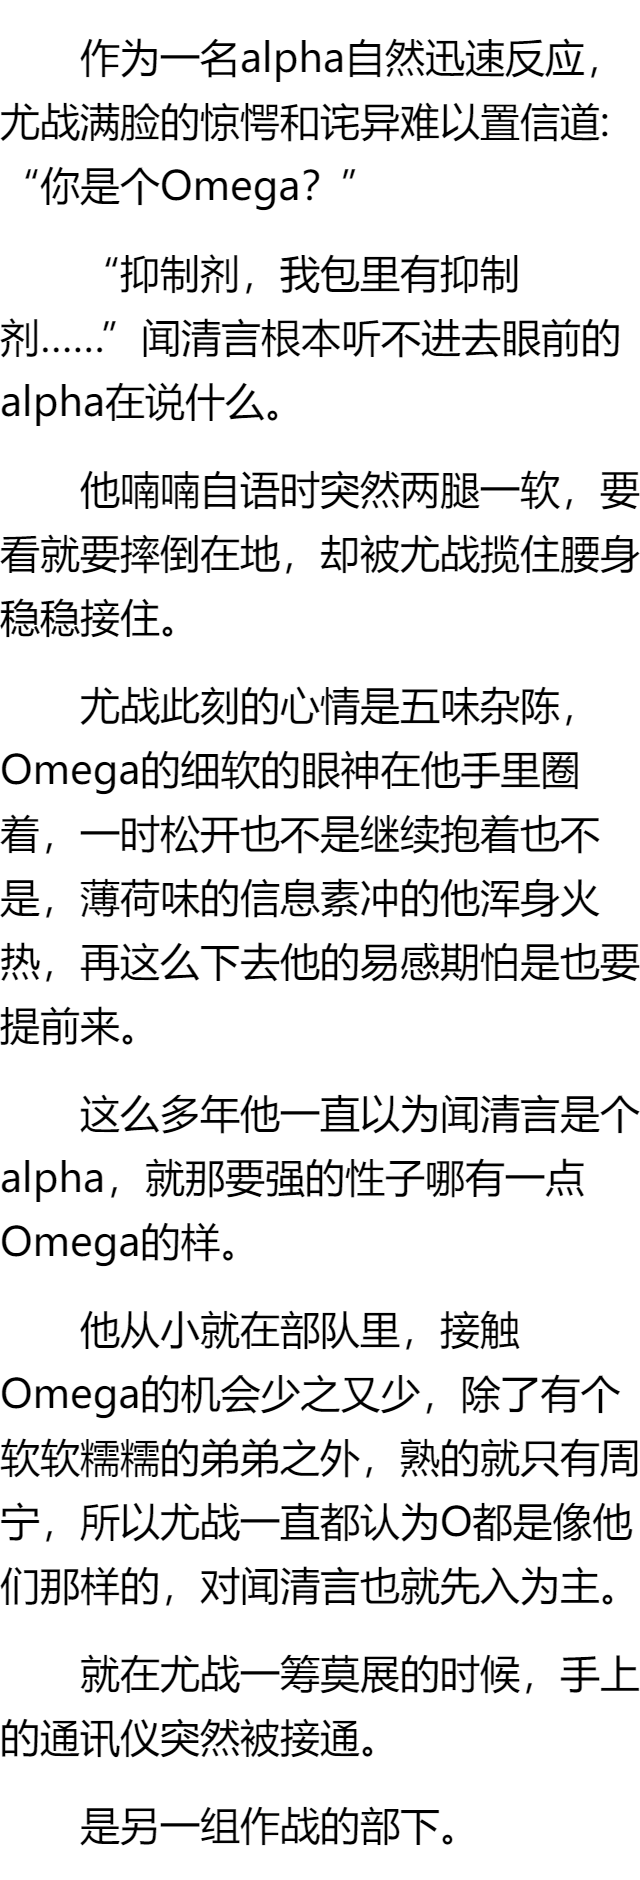 omega被标记过程 强制图片